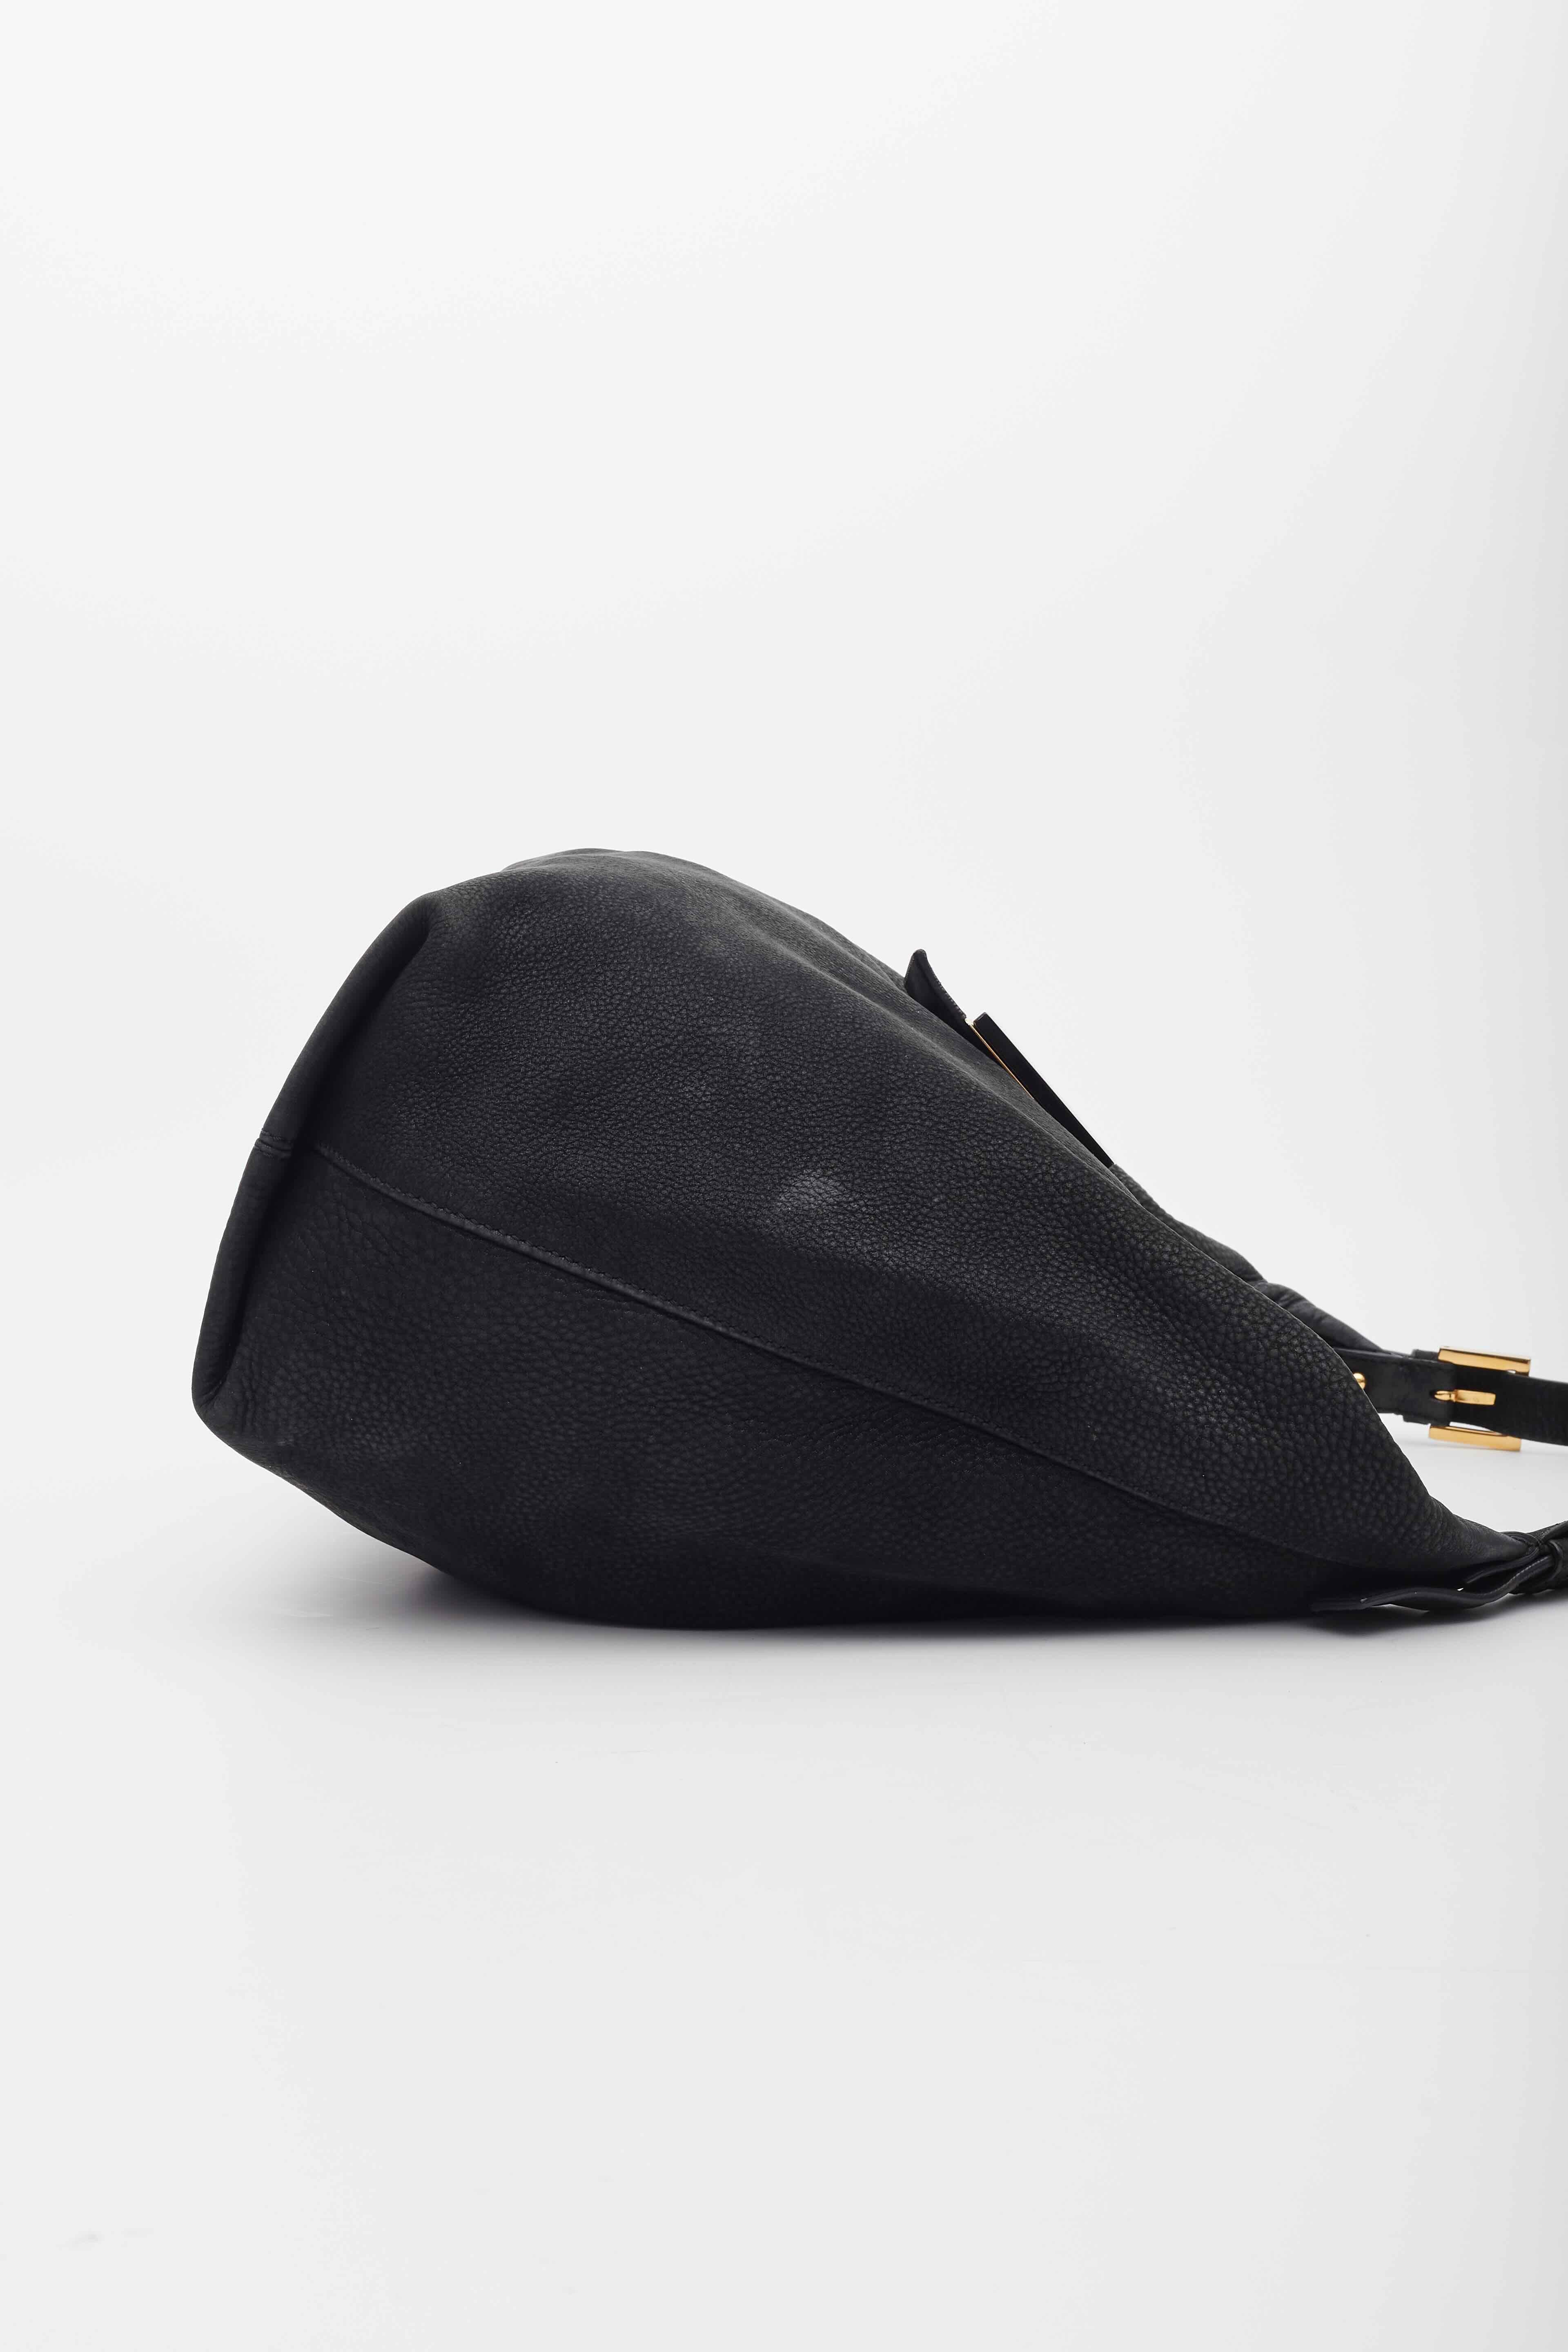 Fendi Black Leather Forever Mama Shoulder Bag Large For Sale 1